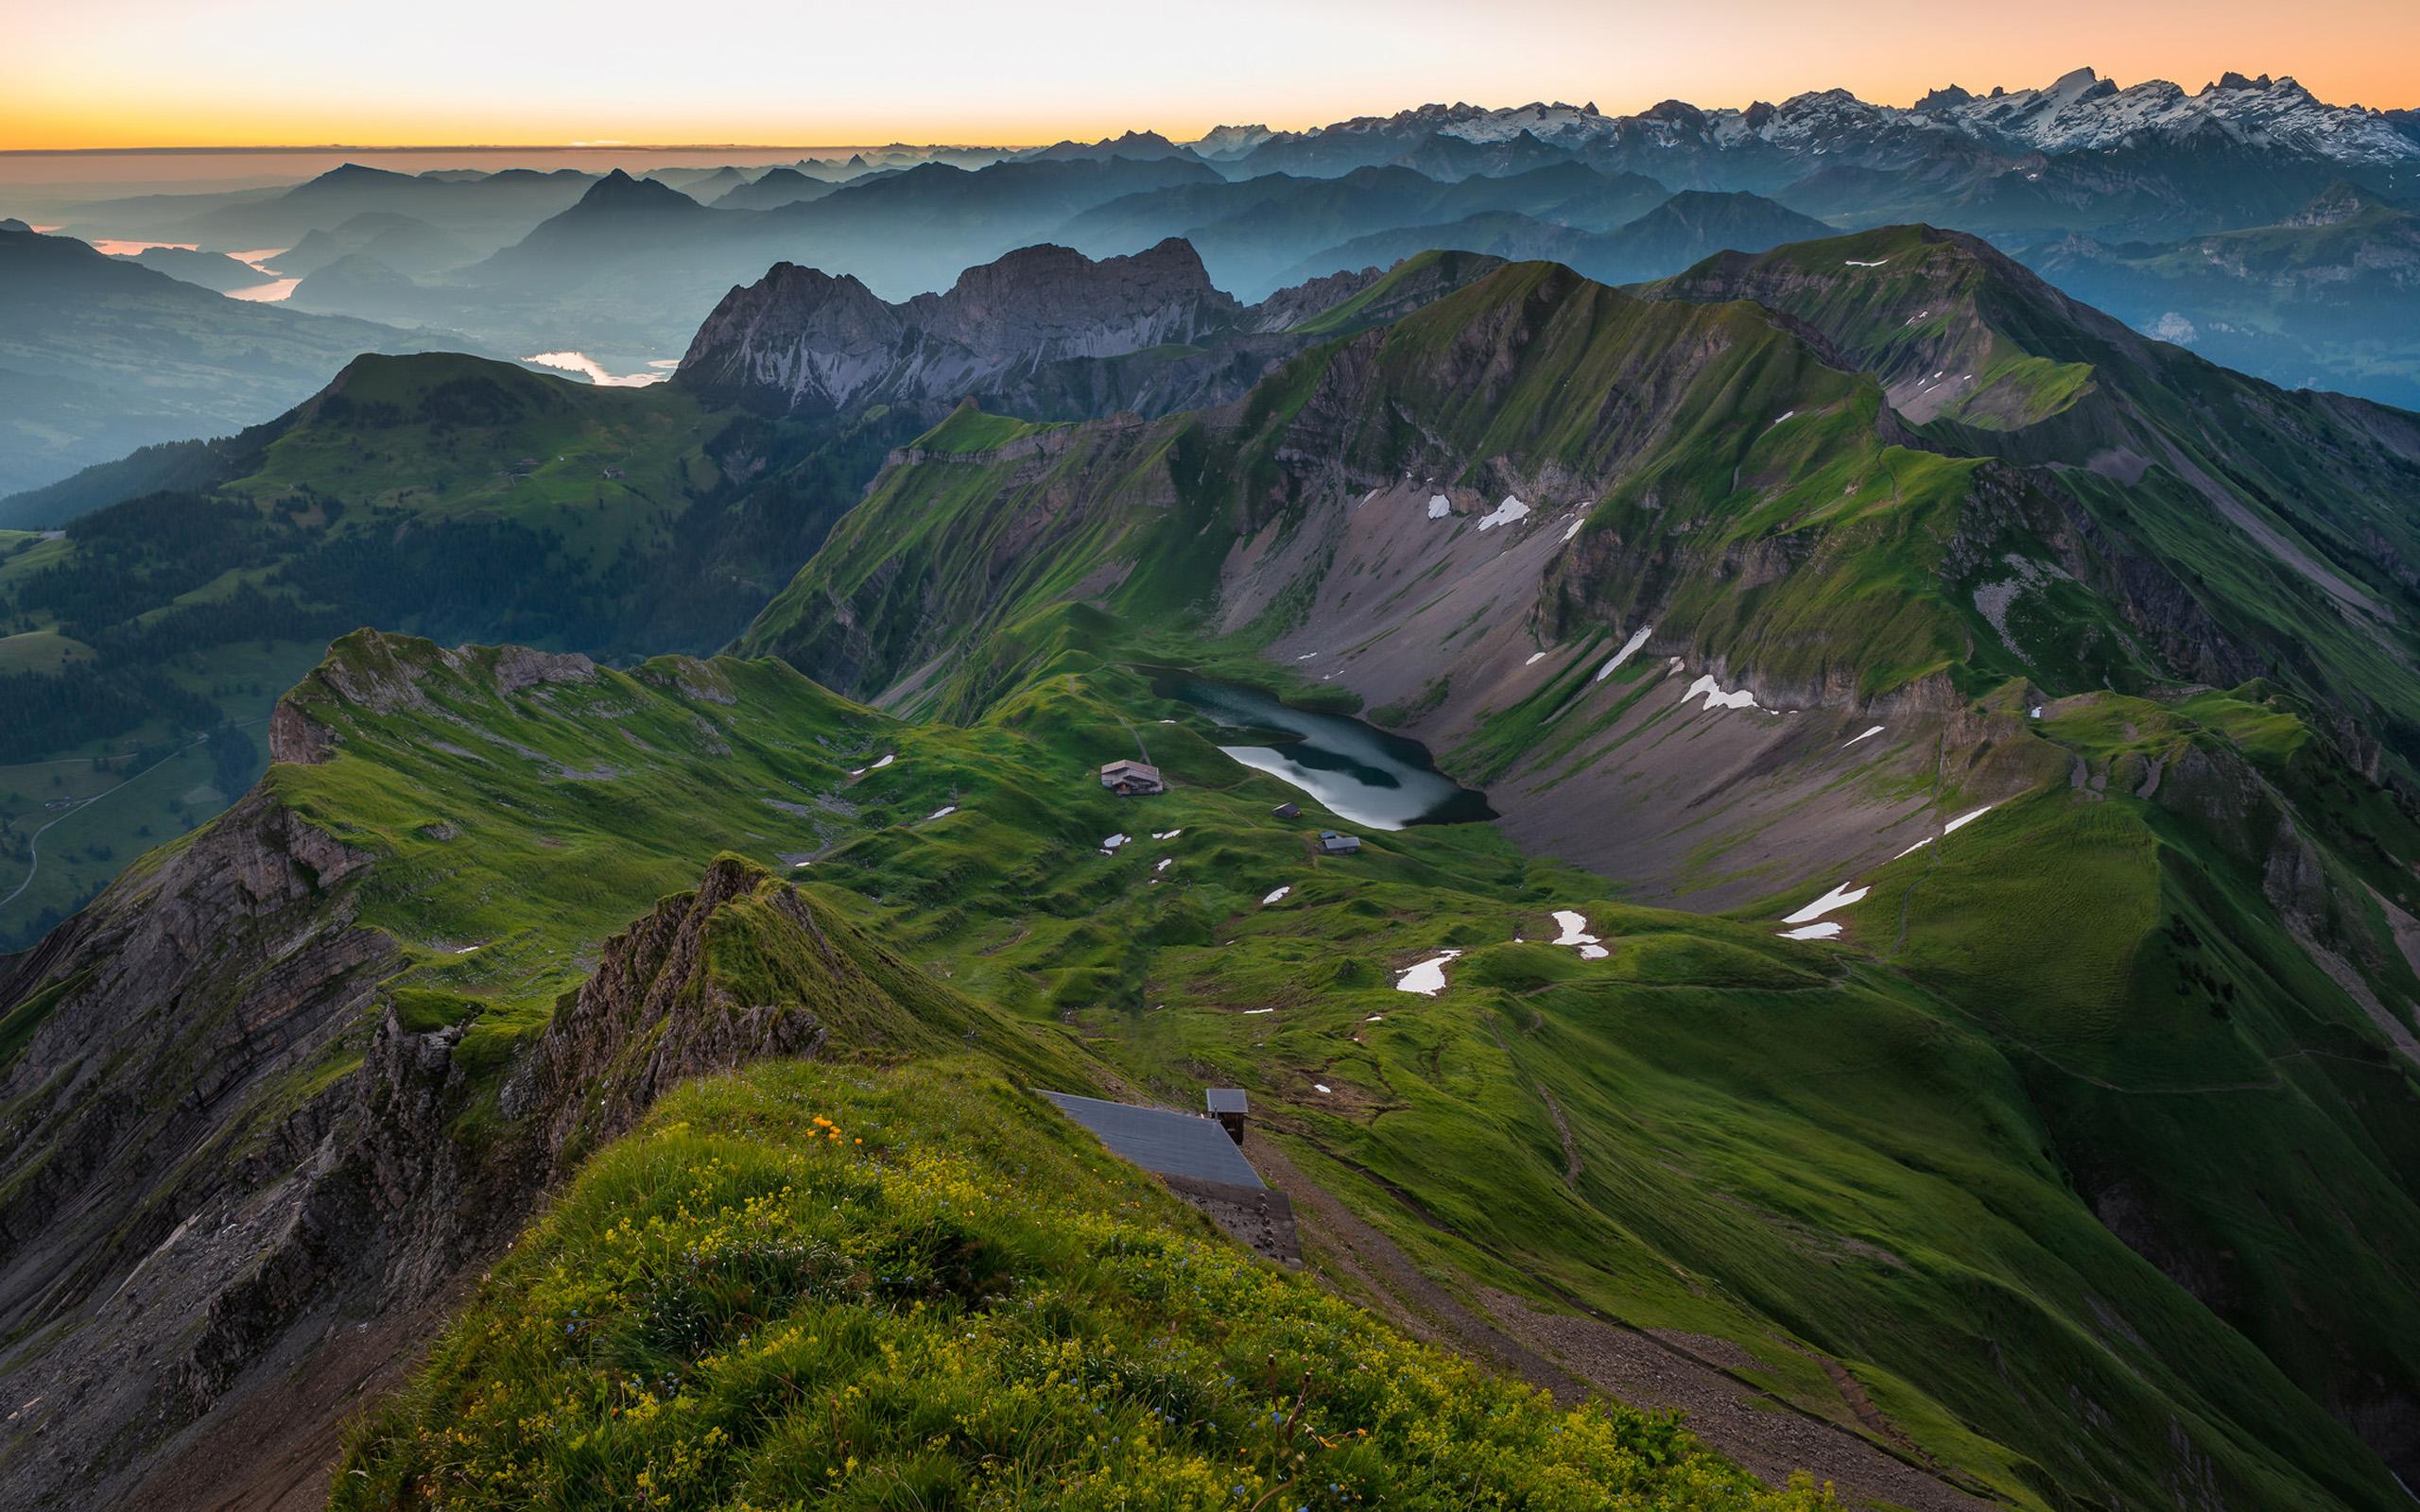 2560 x 1600 · jpeg - Peaks Swiss Alps Desktop Wallpaper Hd 2560x1600 : Wallpapers13